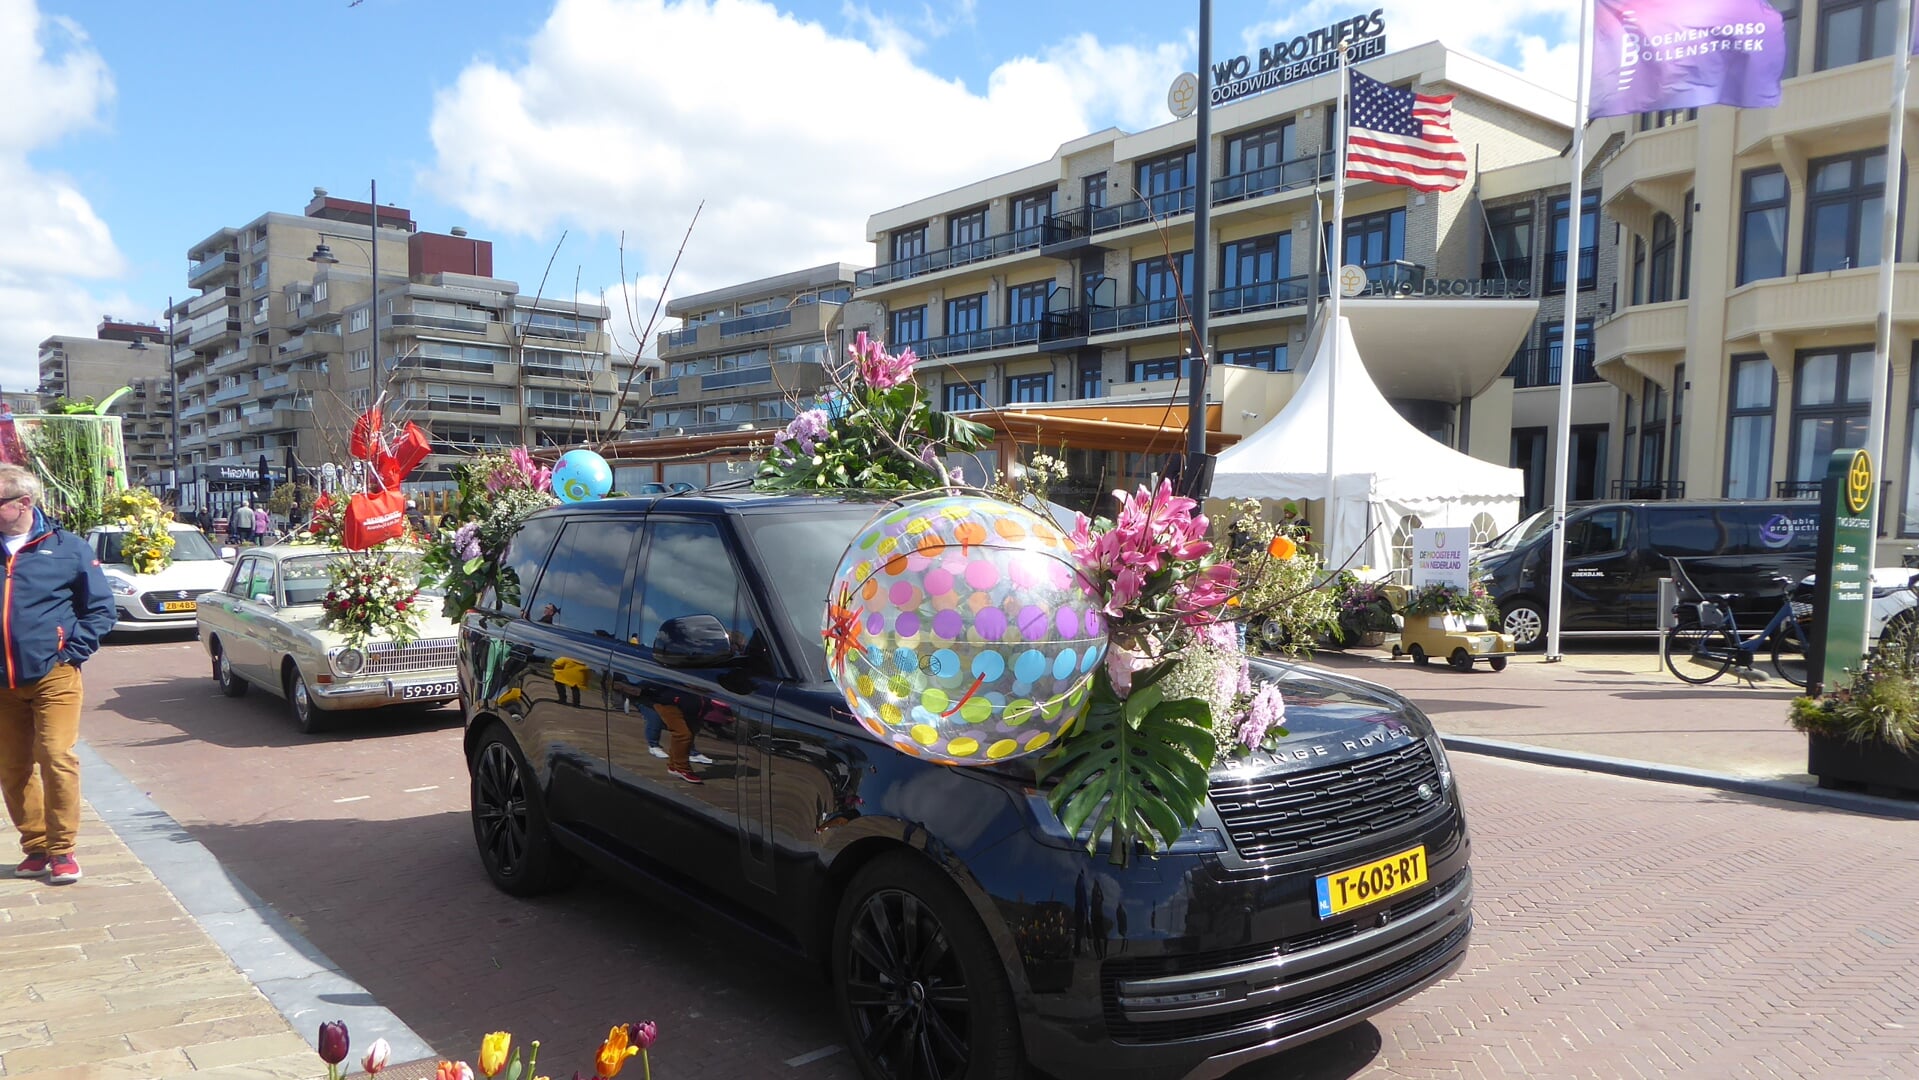 De mooiste file van Nederland was weer te zien in Noordwijk. | Foto: Ina Verblaauw